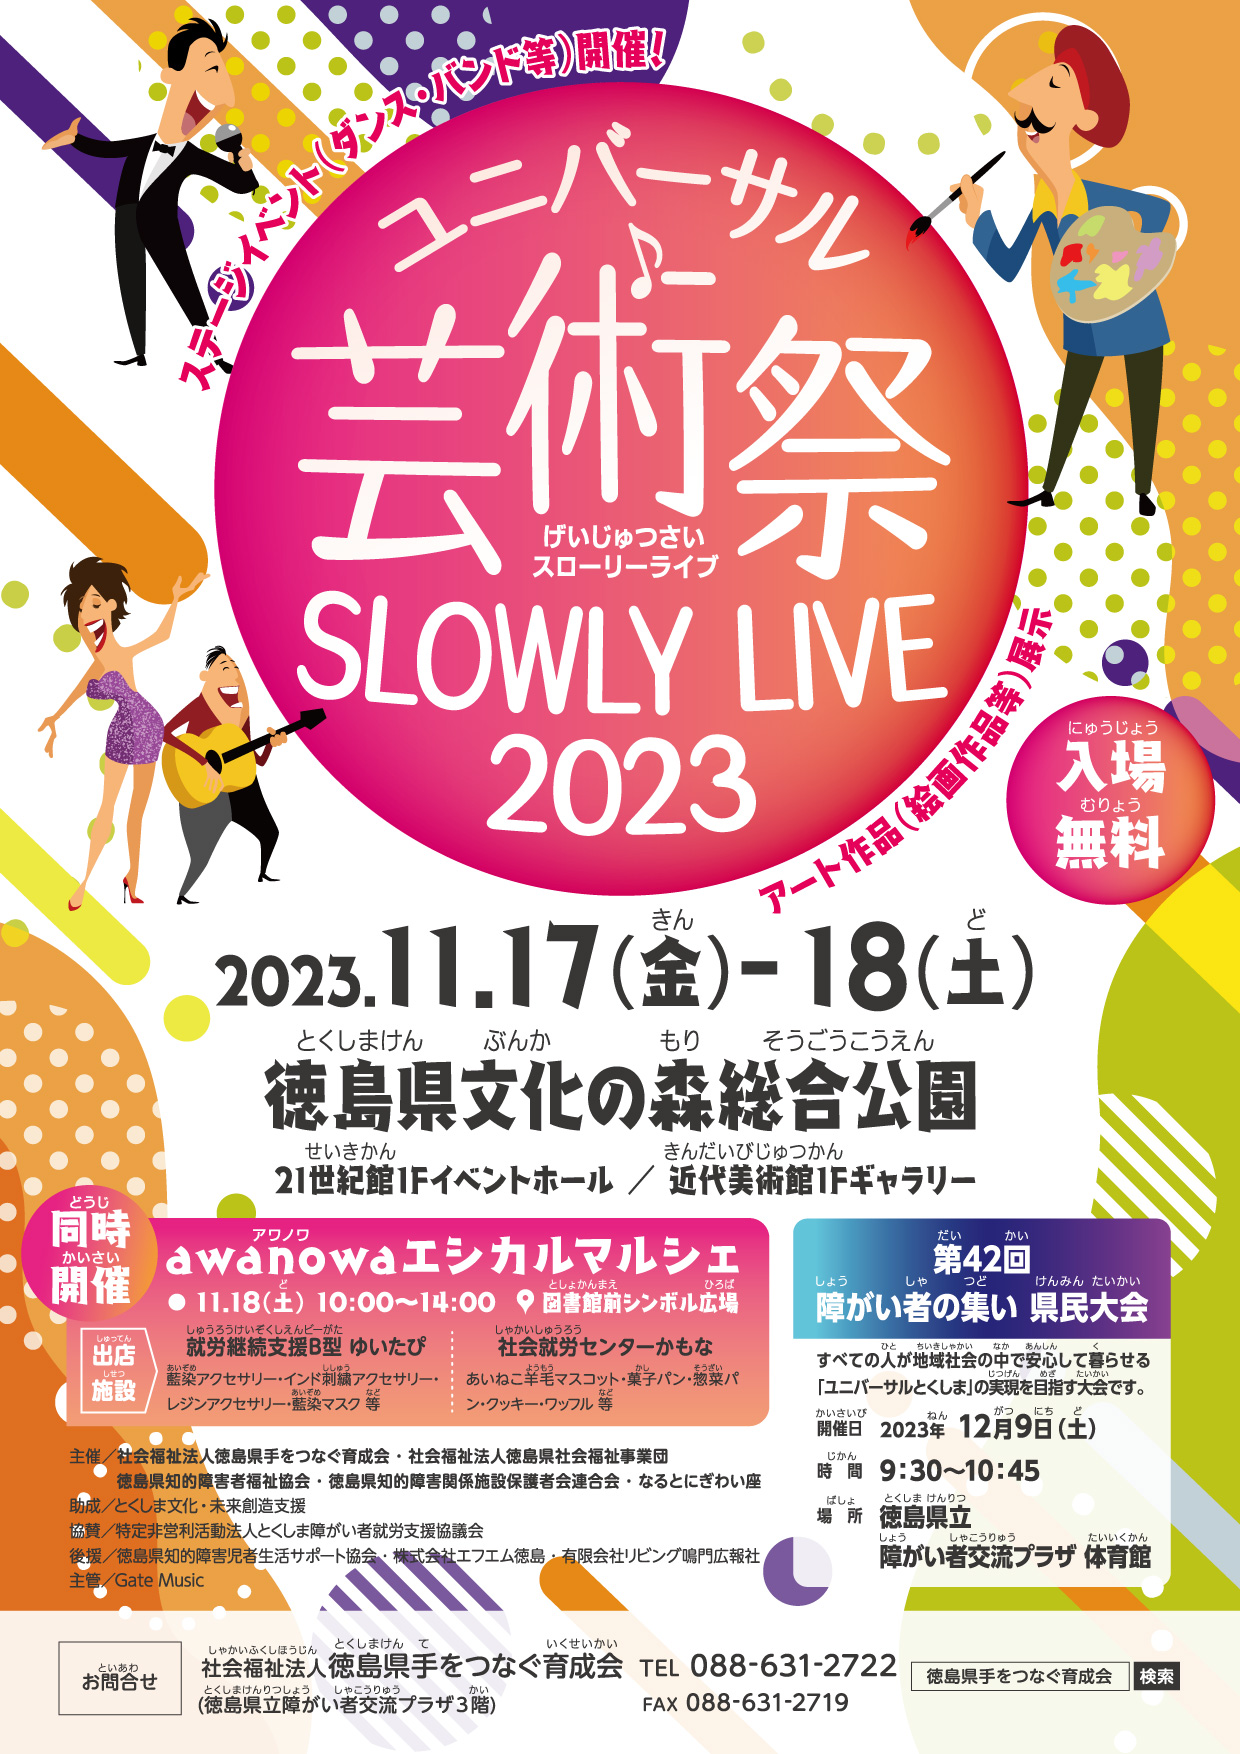 ユニバーサル芸術祭 SLOWLY LIVE 2023